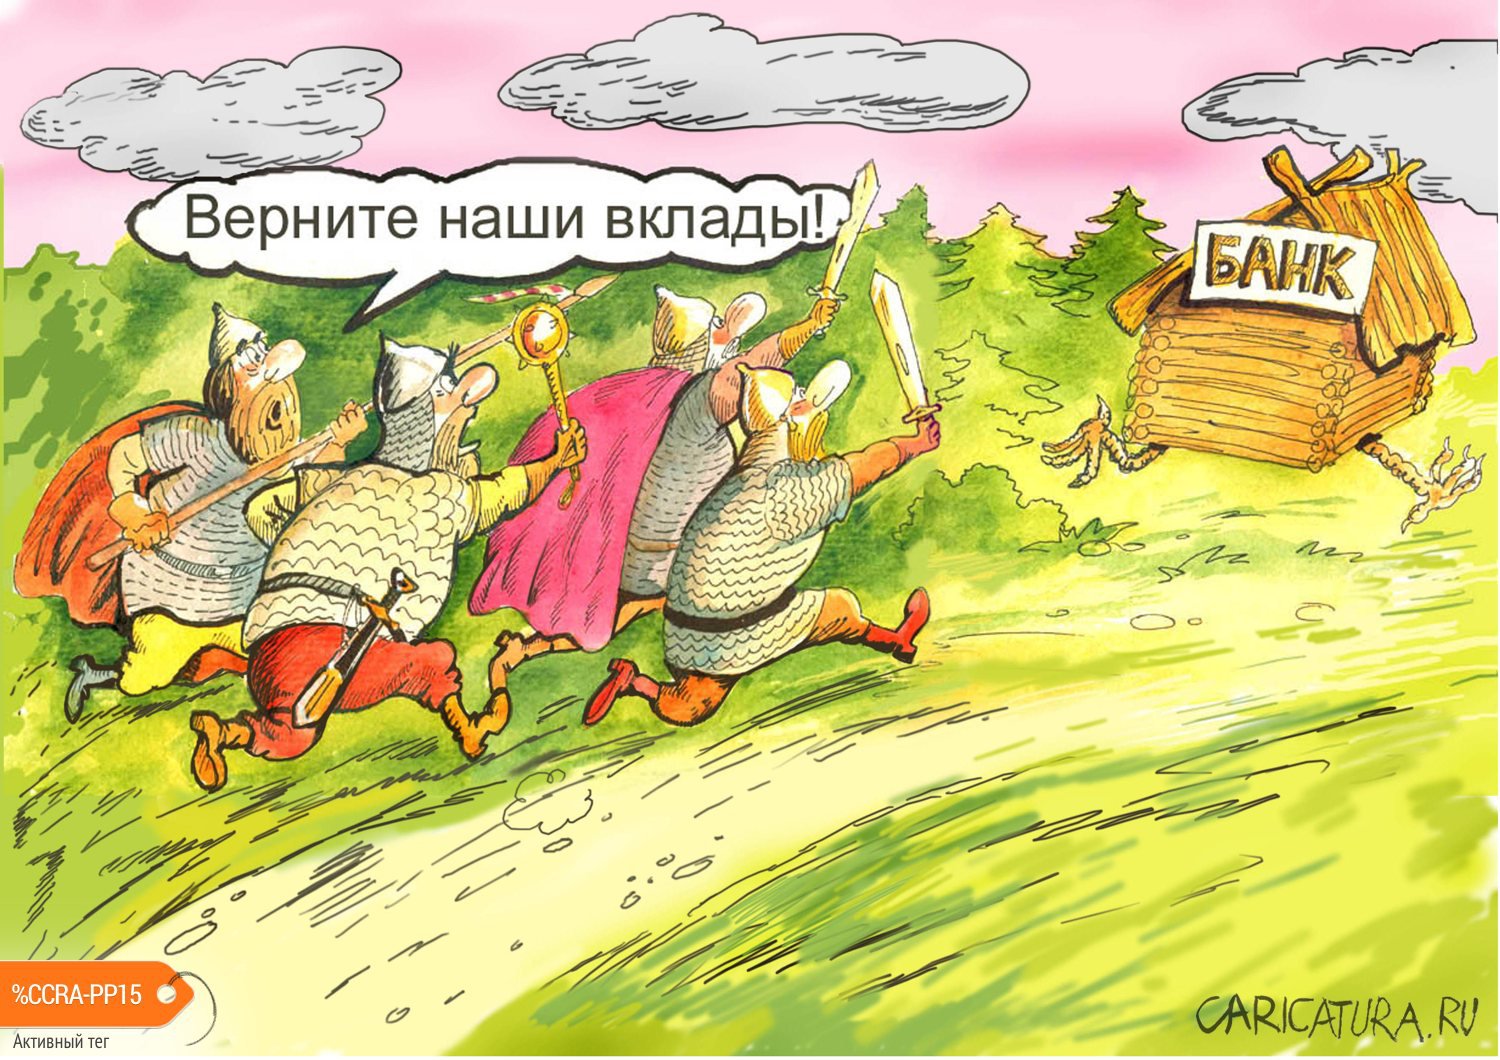 Карикатура "Верните наши вклады", Георгий Майоренко